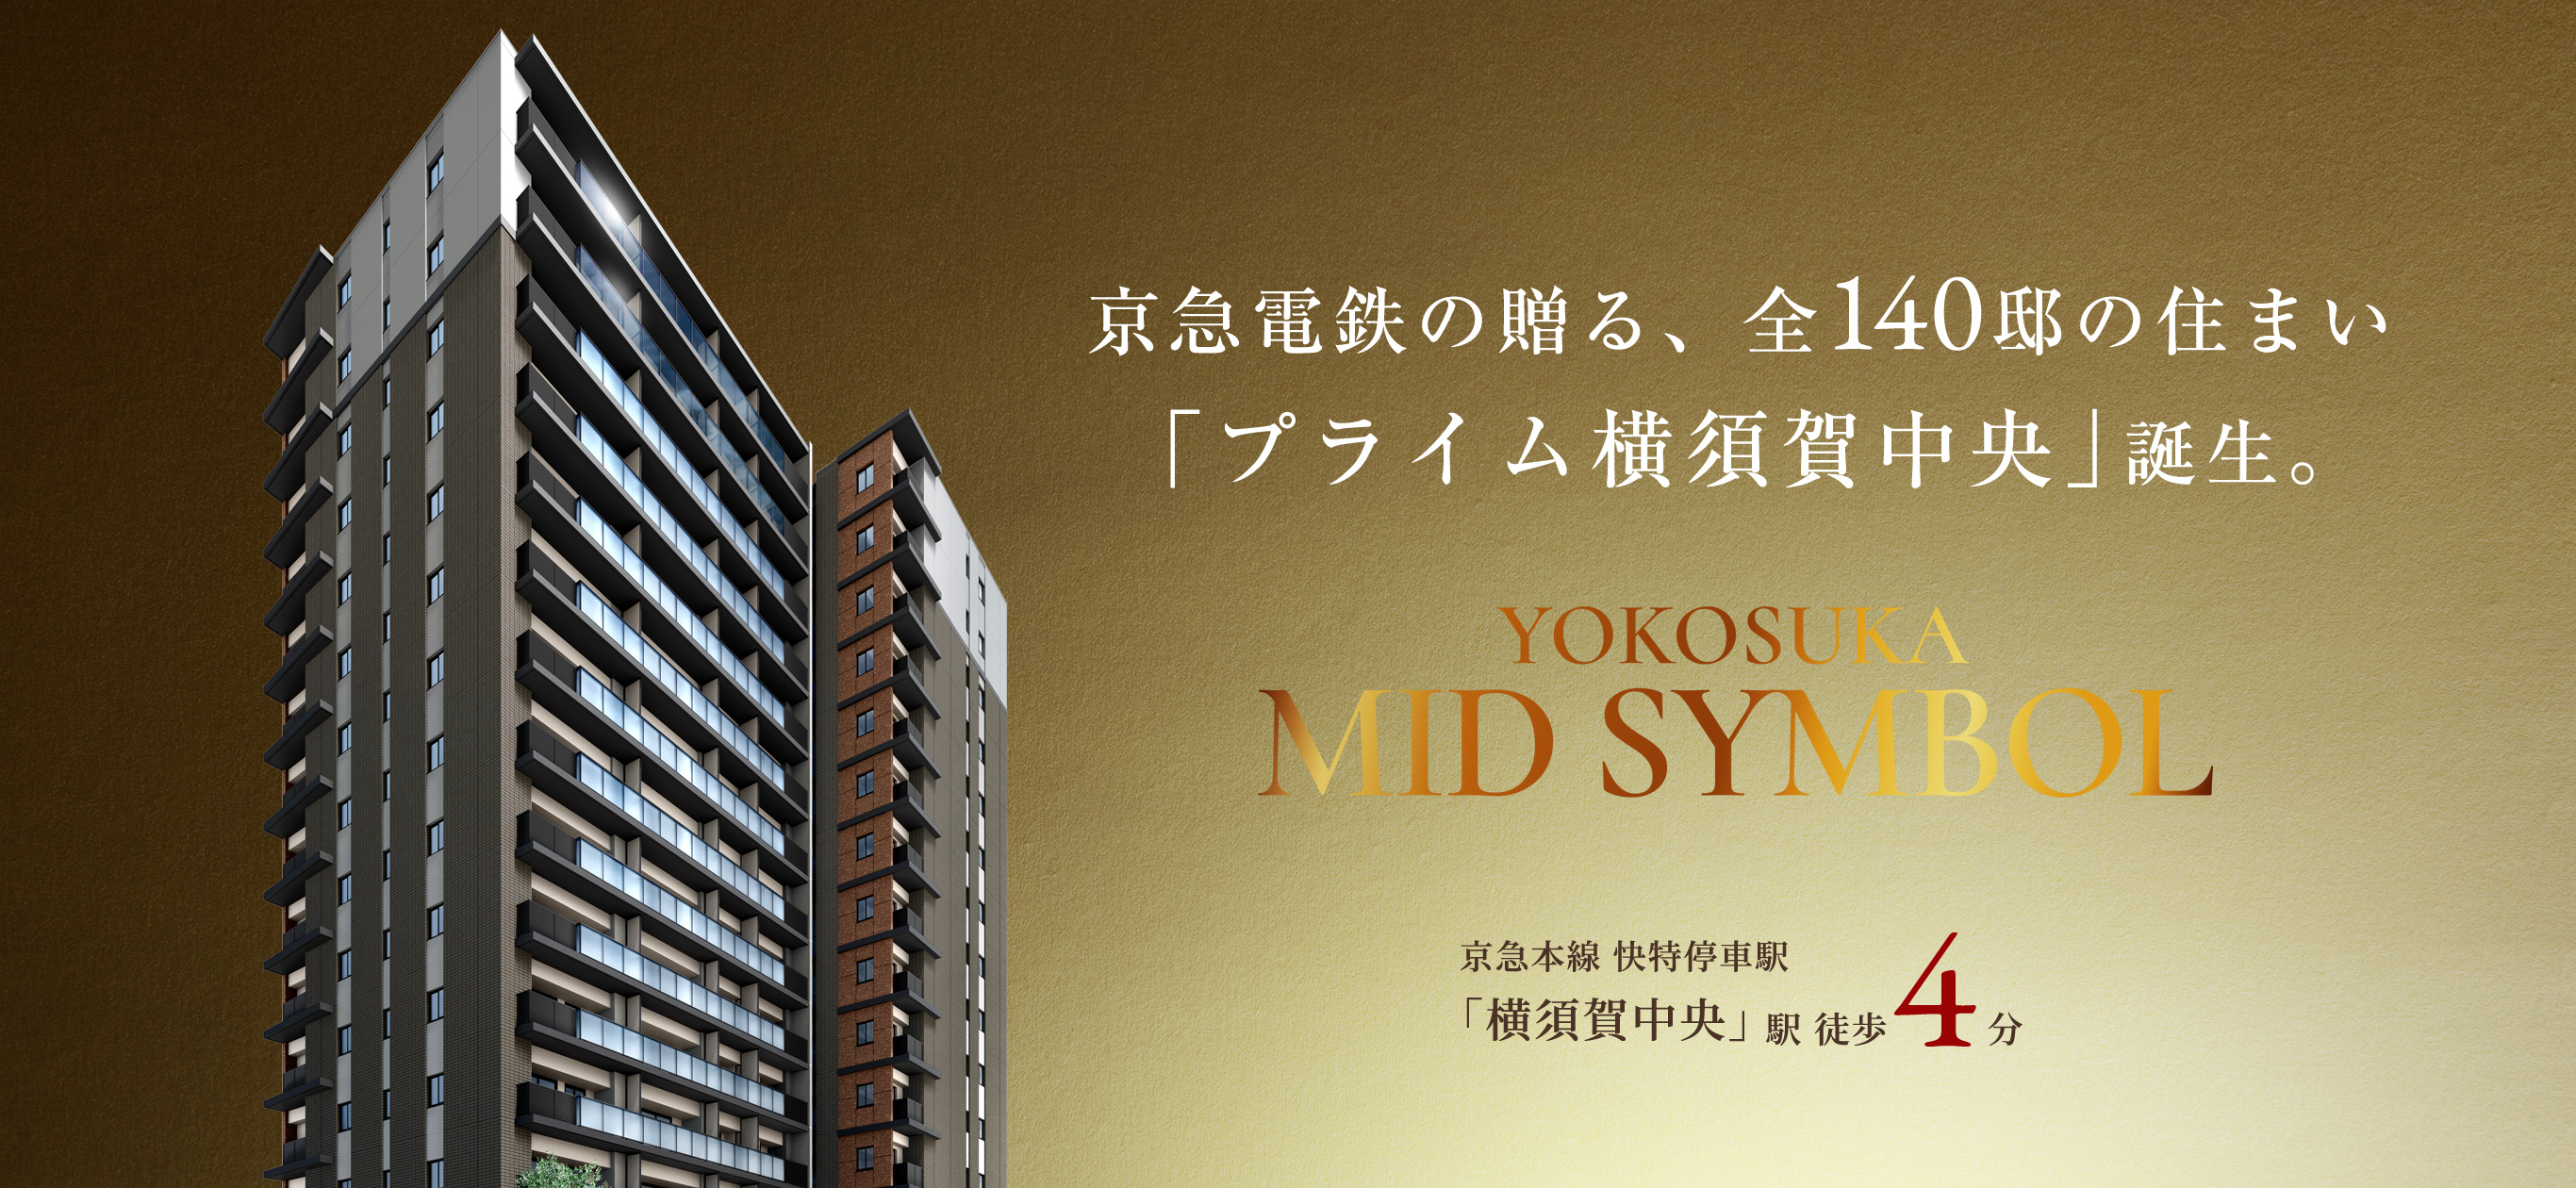 京急電鉄の贈る、全140邸の住まい「プライム横須賀中央」誕生。